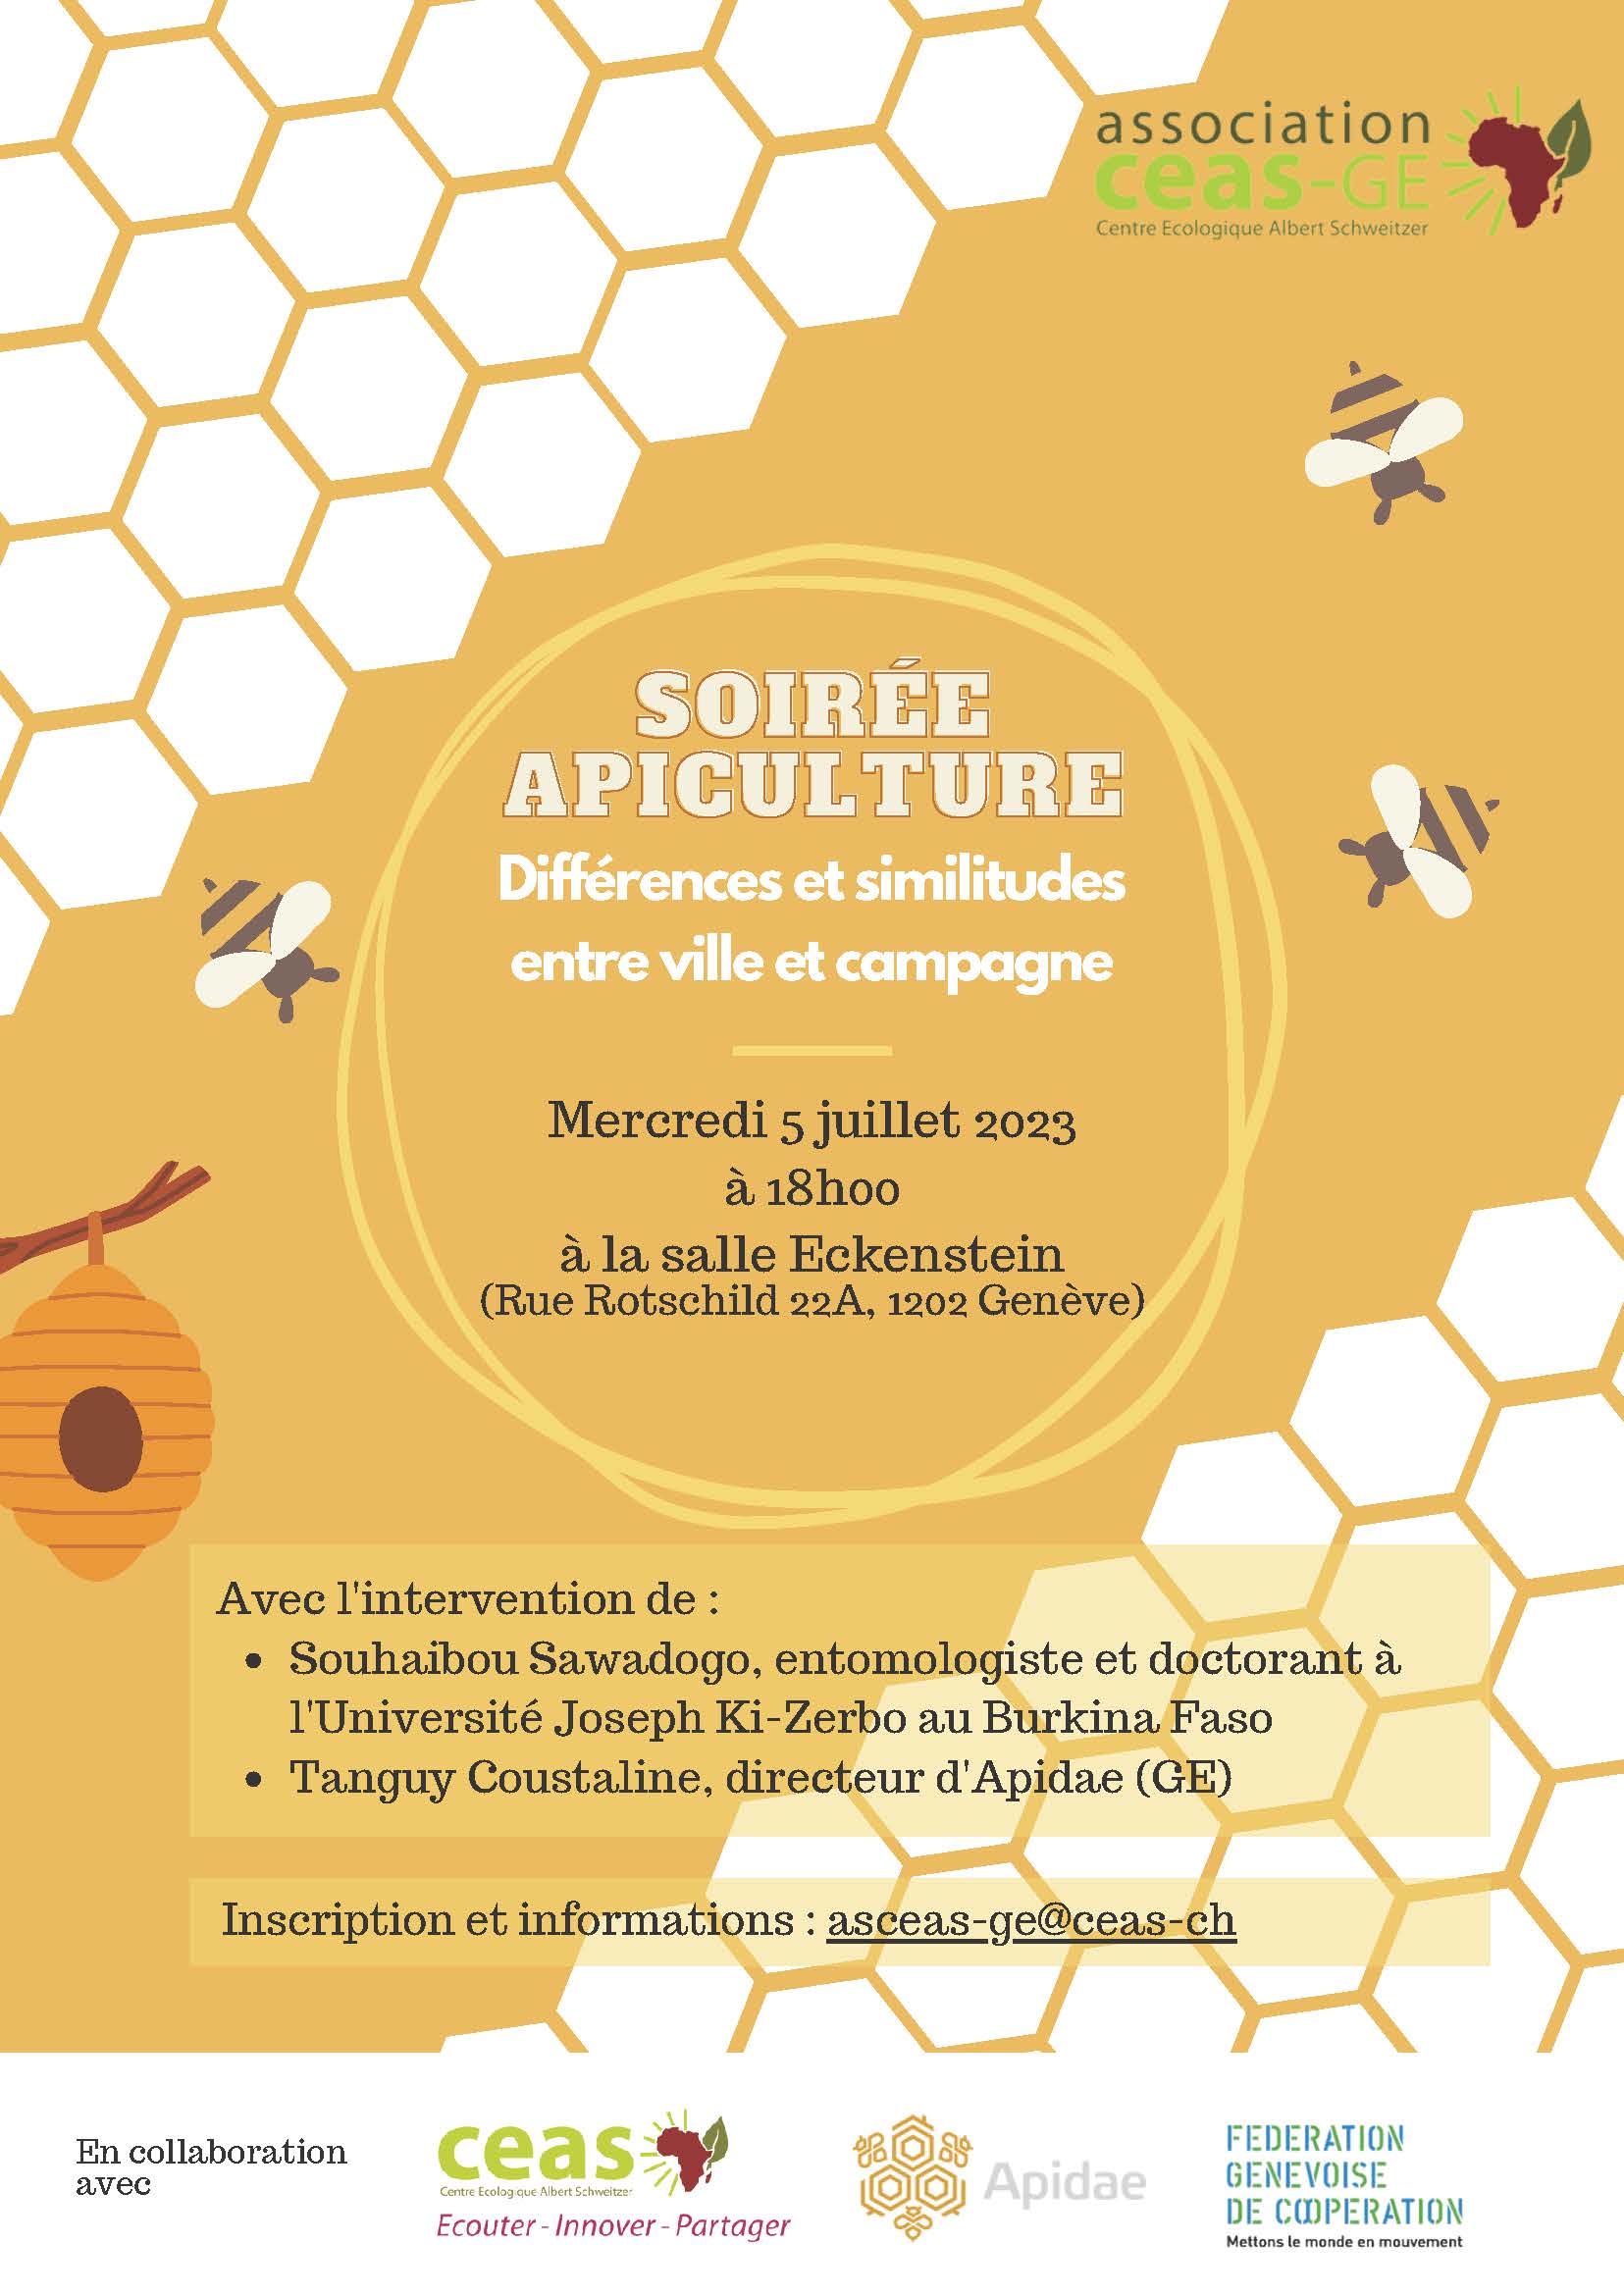 Soirée apiculture